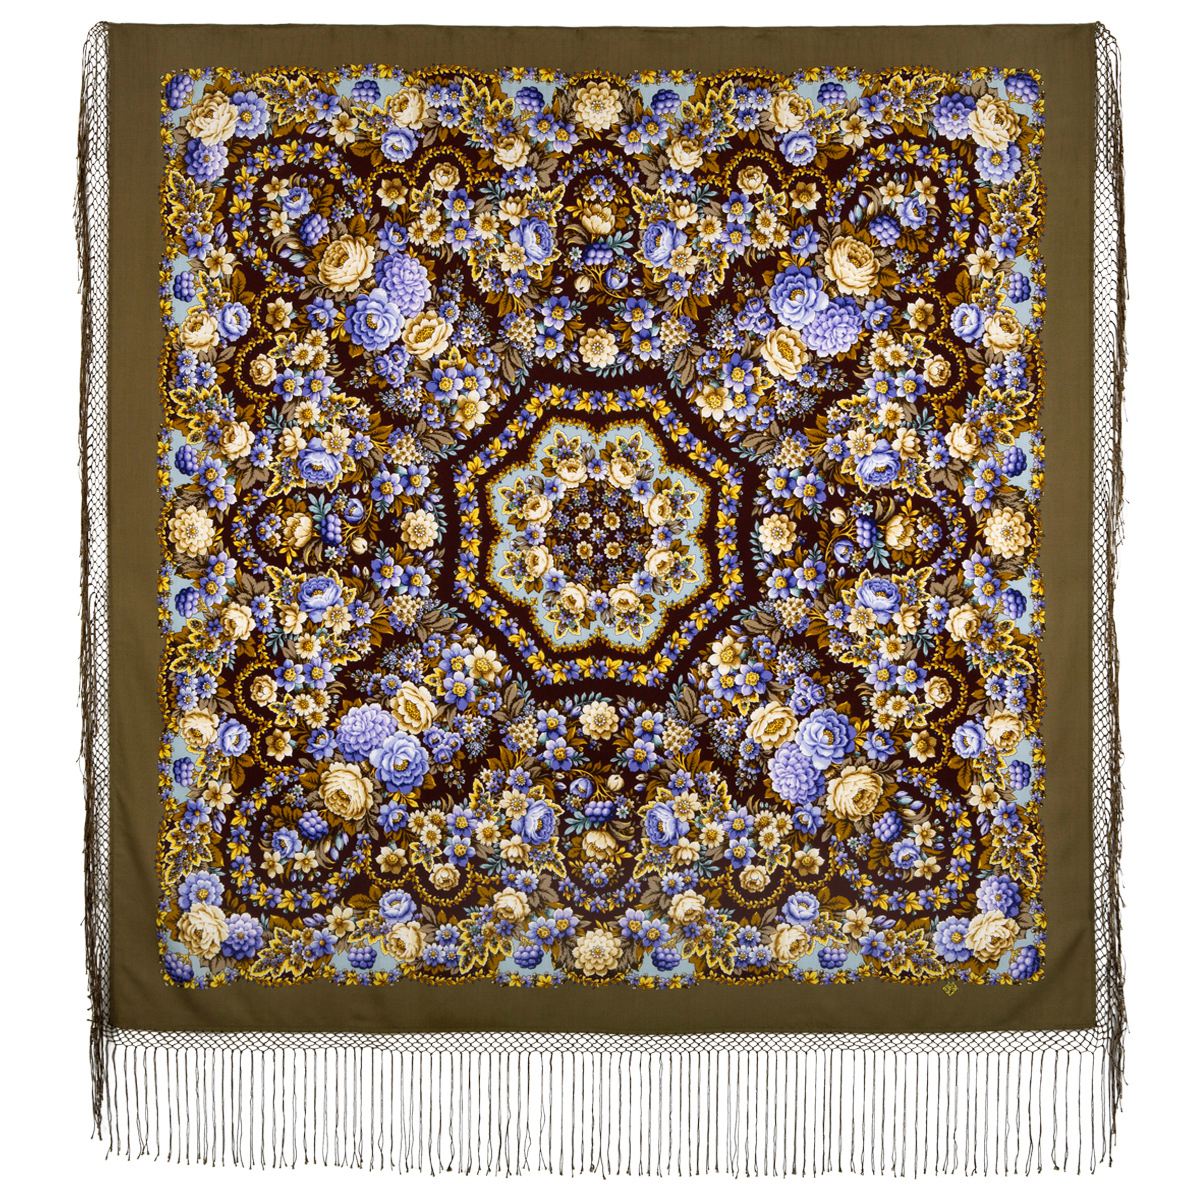 Платок женский Павловопосадский платок 1816 оливковый, 148х148 см